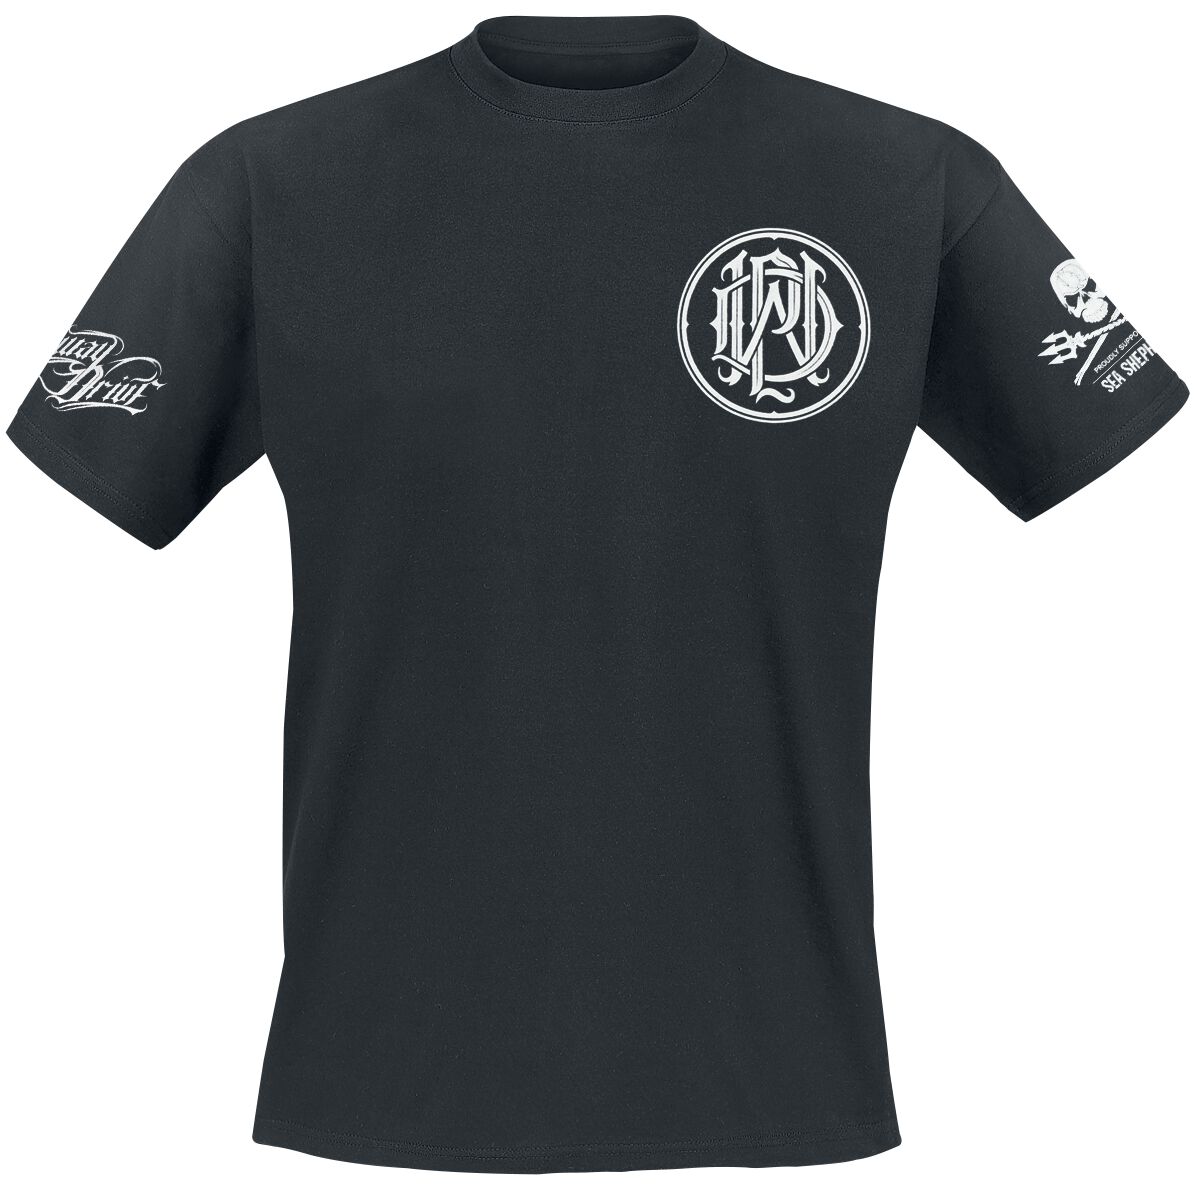 Parkway Drive T-Shirt - Sea Shepherd Cooperation - How Will You Justify - S bis XXL - für Männer - Größe XXL - schwarz  - EMP exklusives Merchandise!